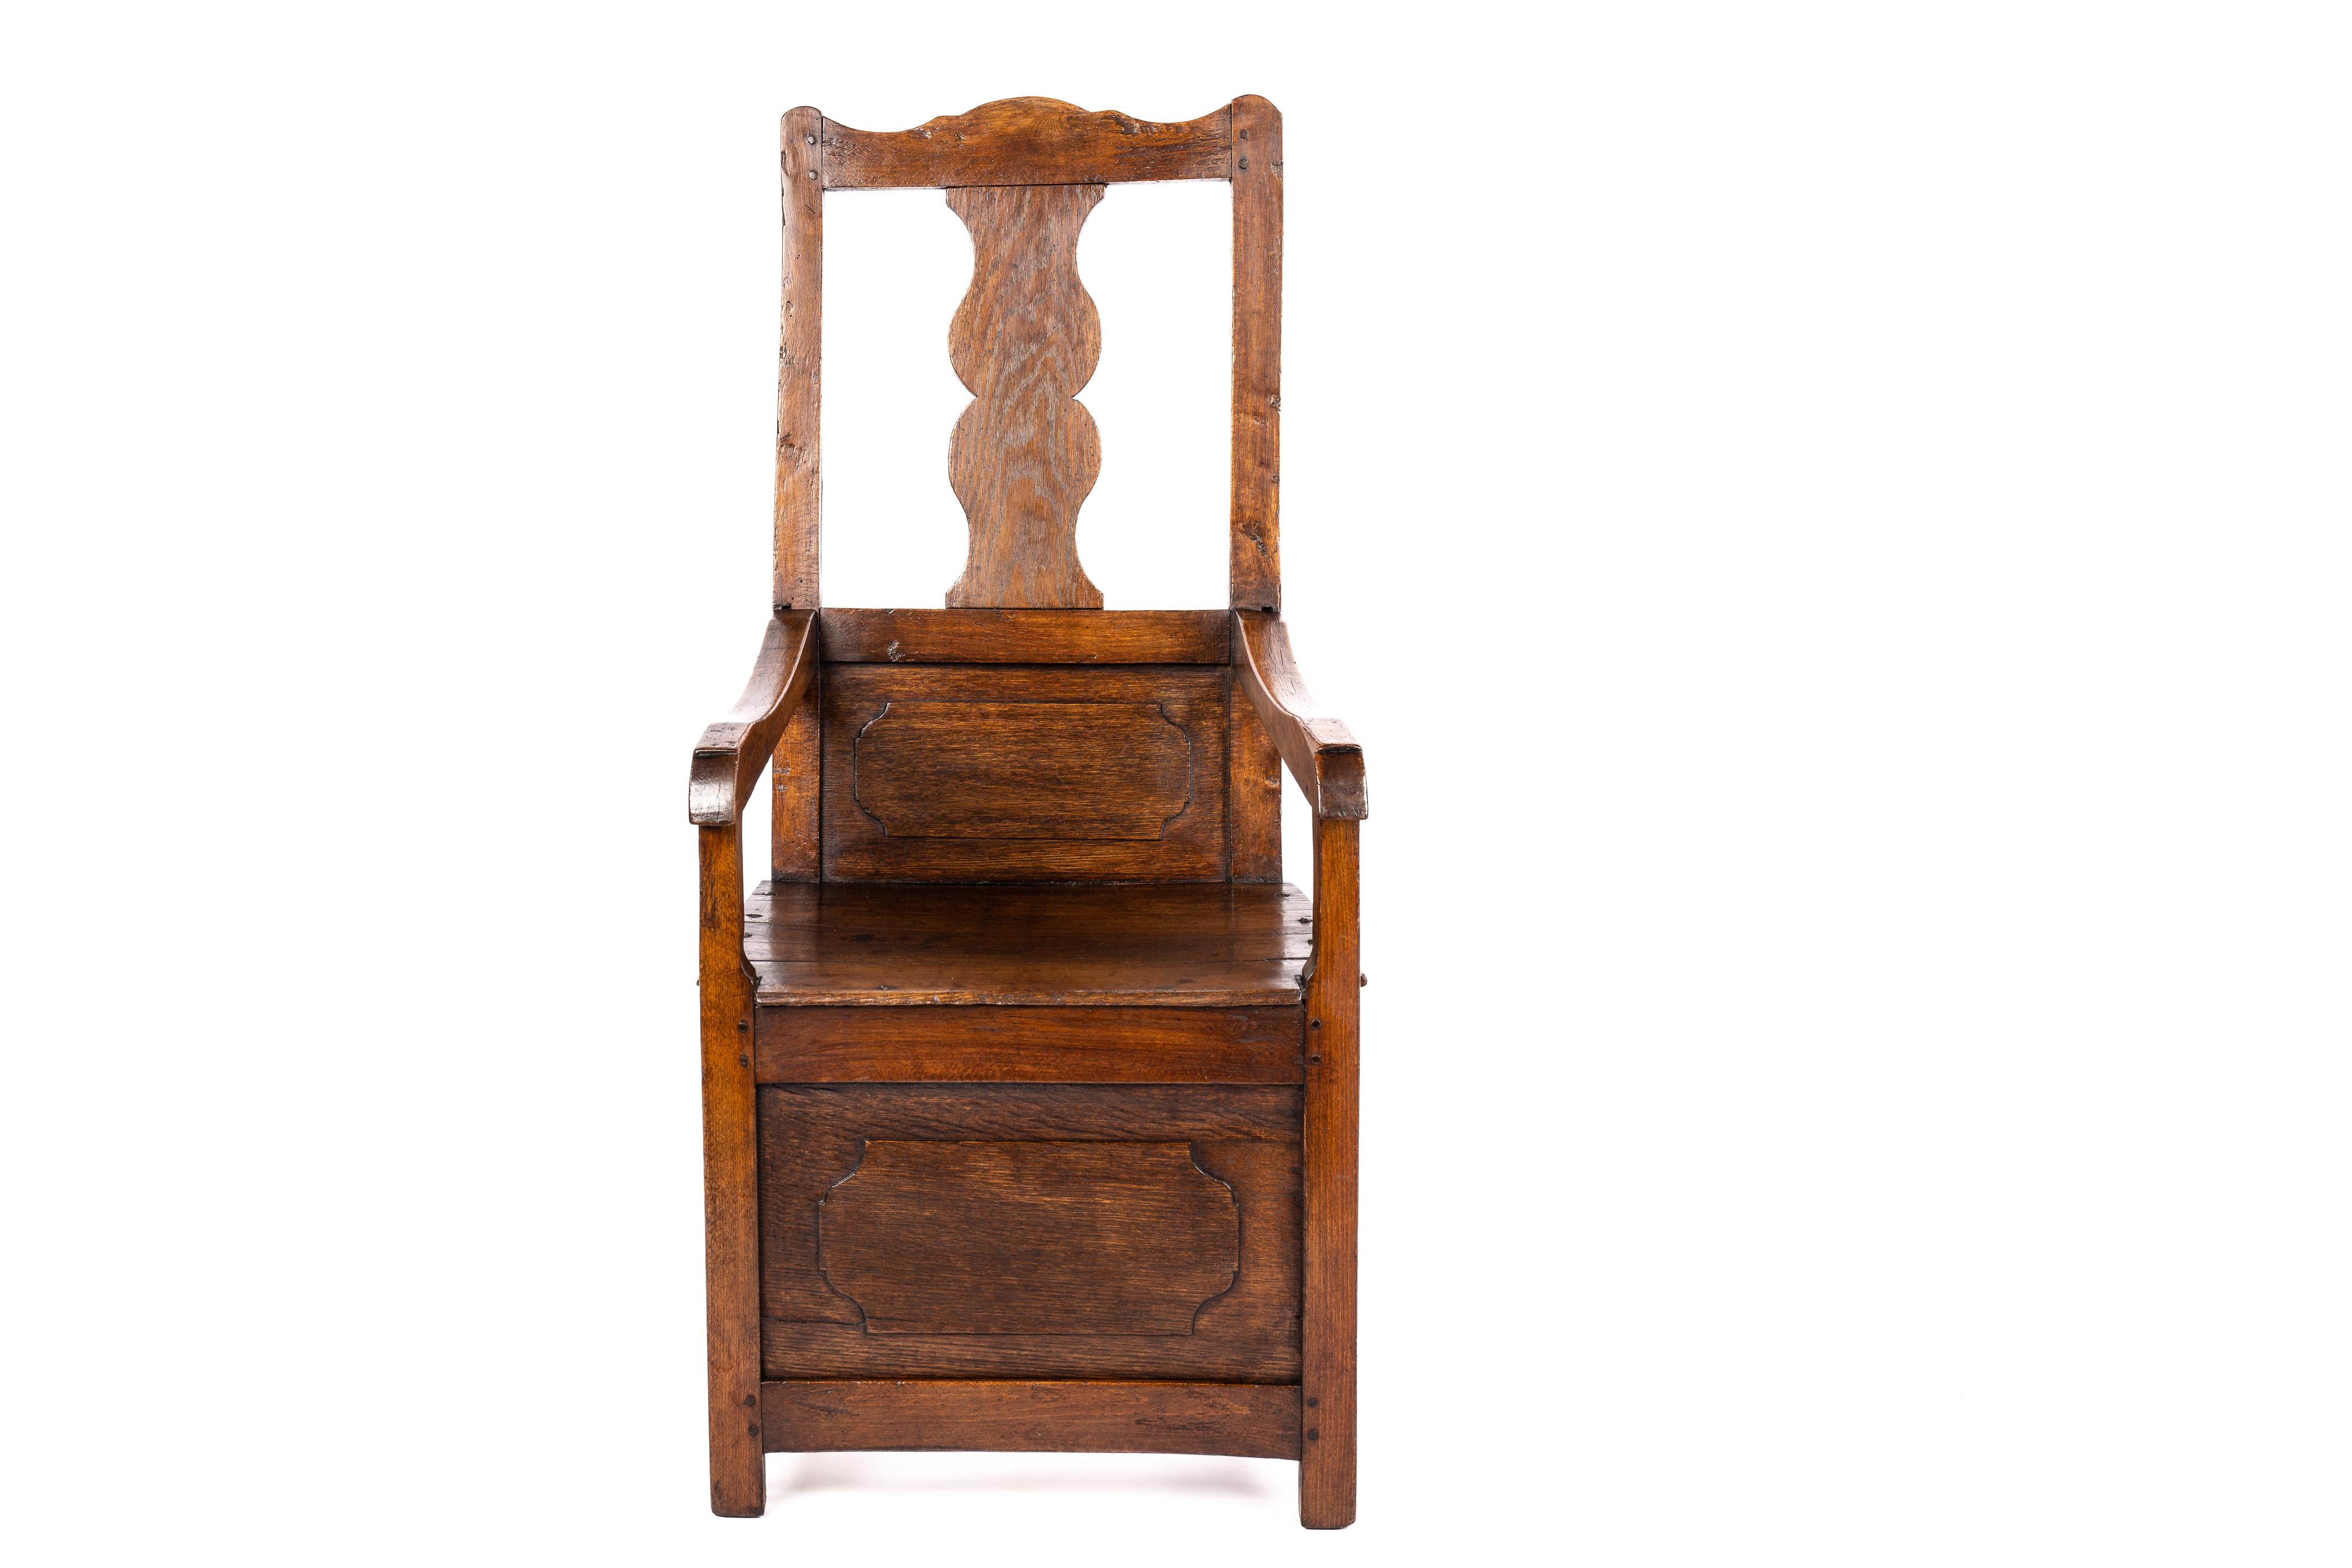 Hier wird ein wunderschöner antiker Sessel angeboten, ein wahres Zeugnis zeitloser Schönheit und Handwerkskunst. Dieses bemerkenswerte Stück ist mit seinen breiten Armlehnen und der getäfelten Rückenlehne und Vorderseite ein schönes Beispiel für den